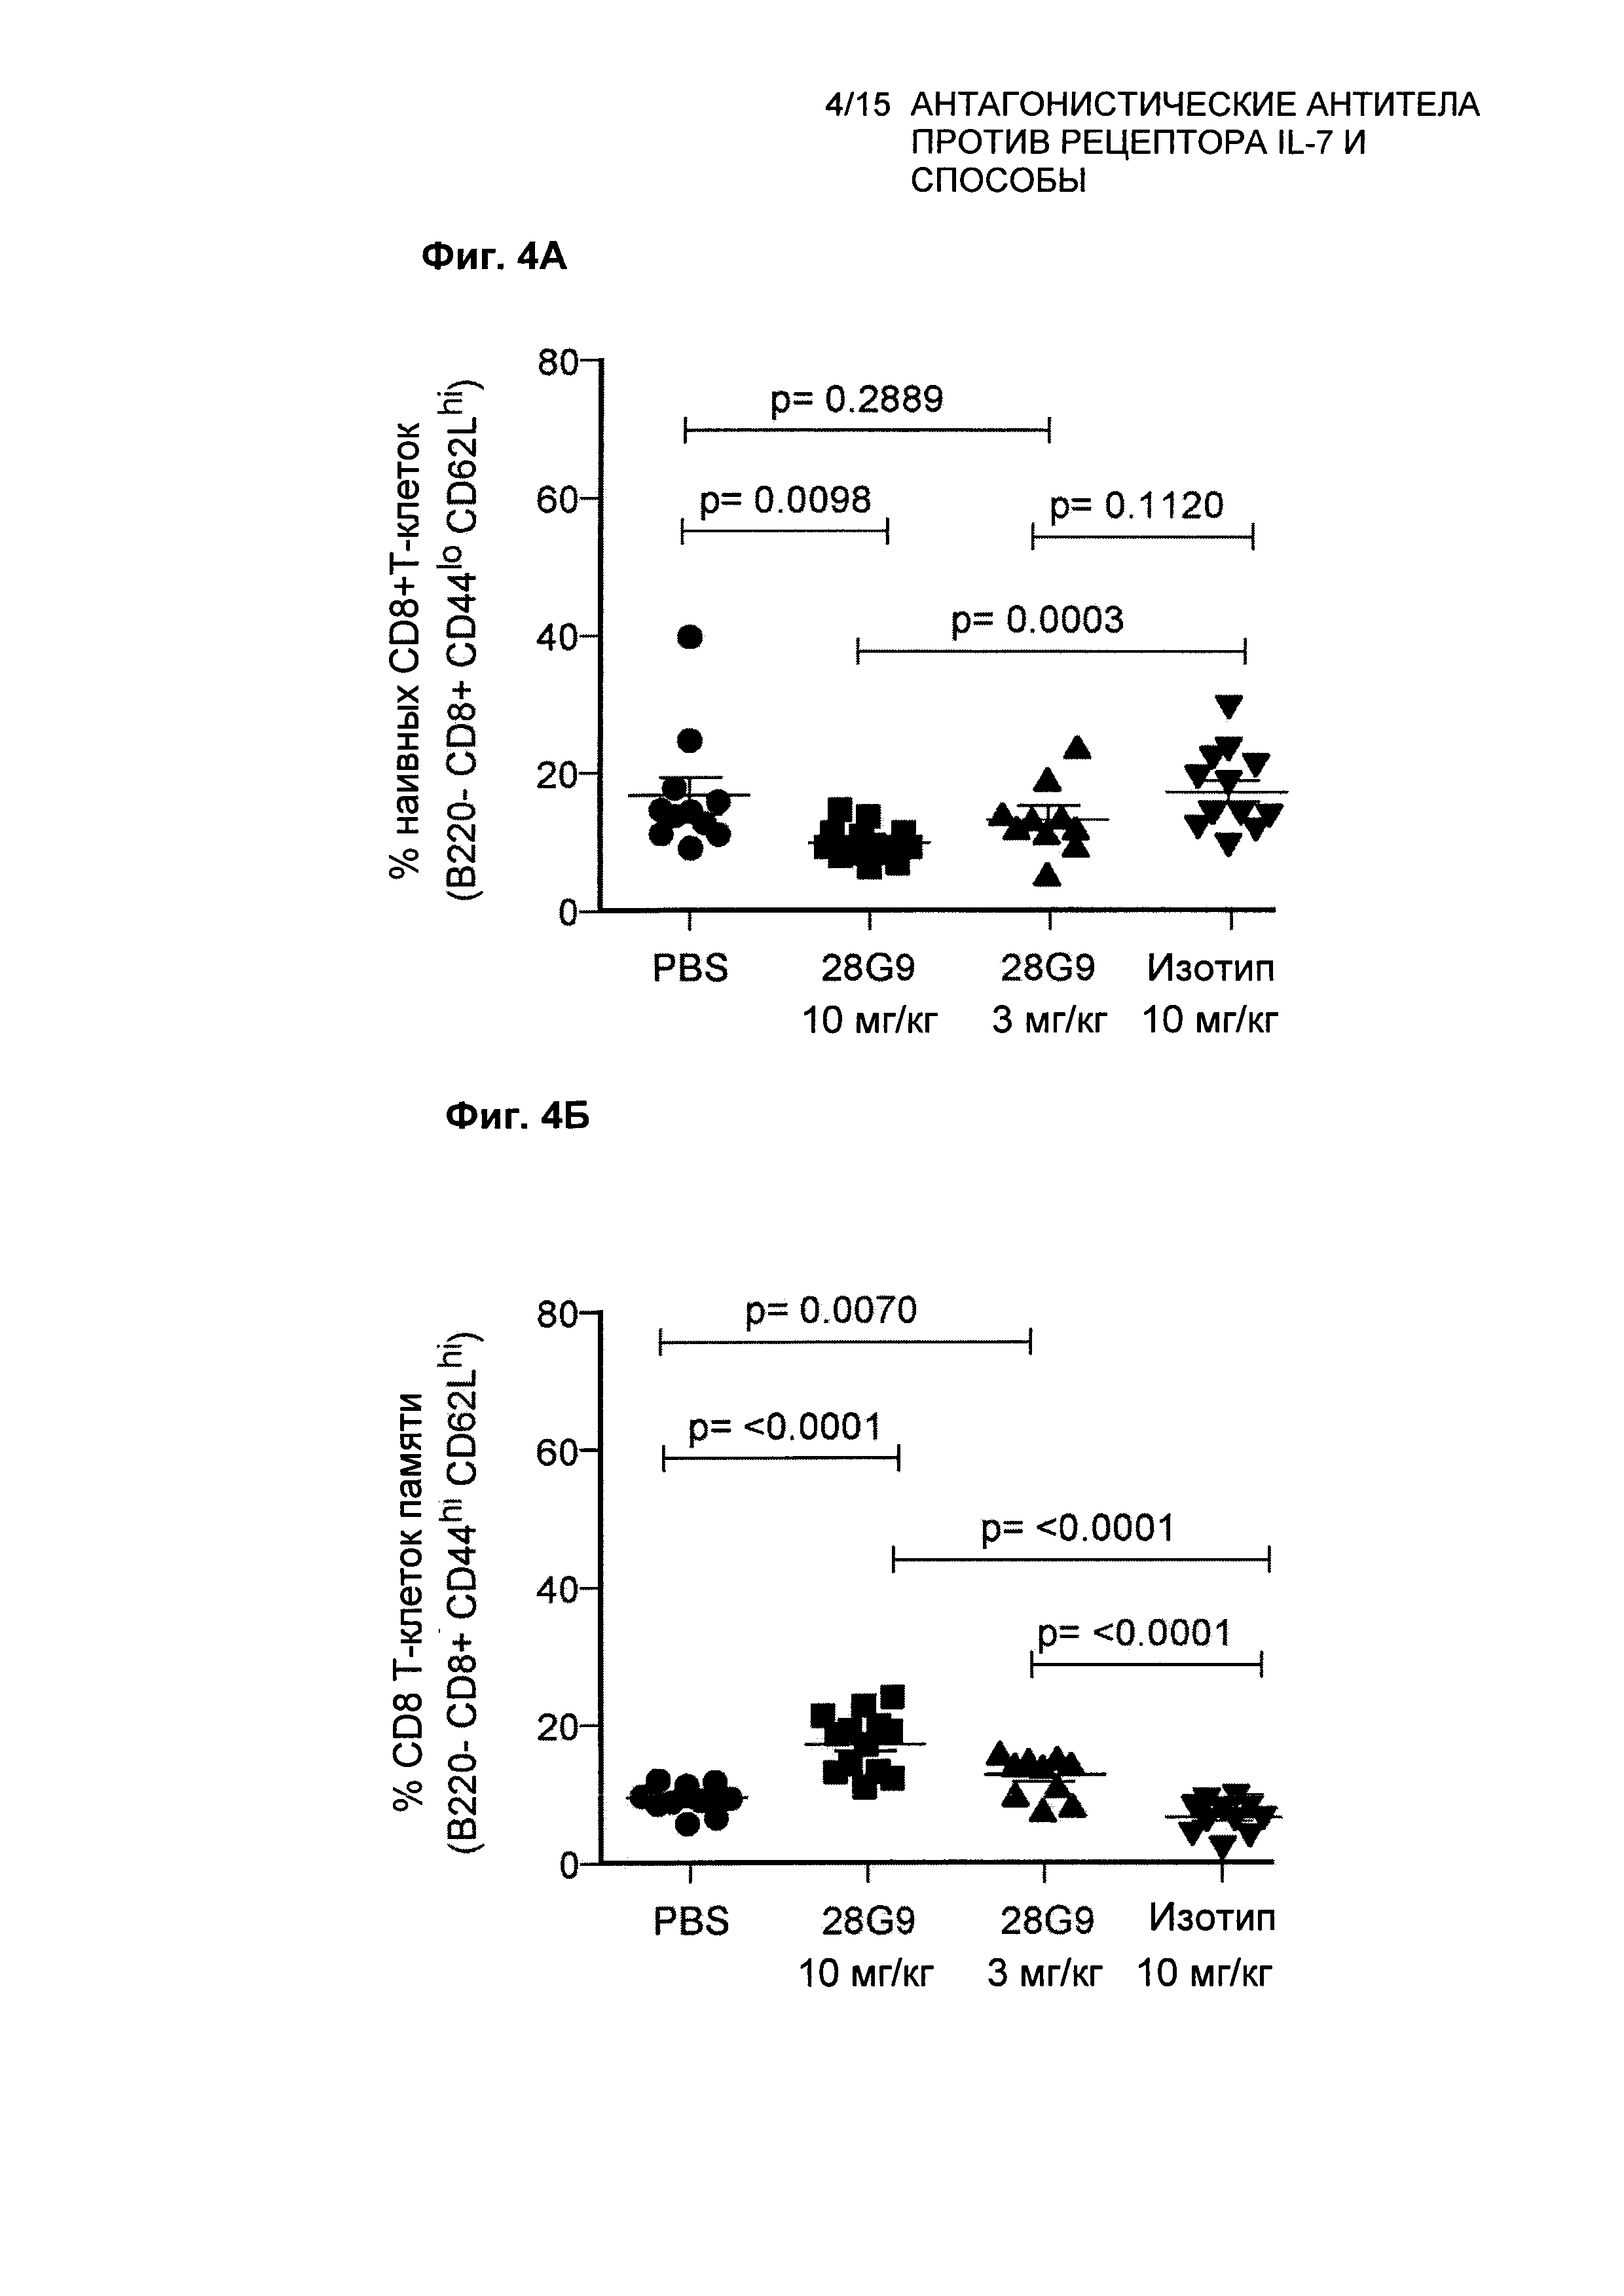 Антагонистические антитела против рецептора IL-7 и способы